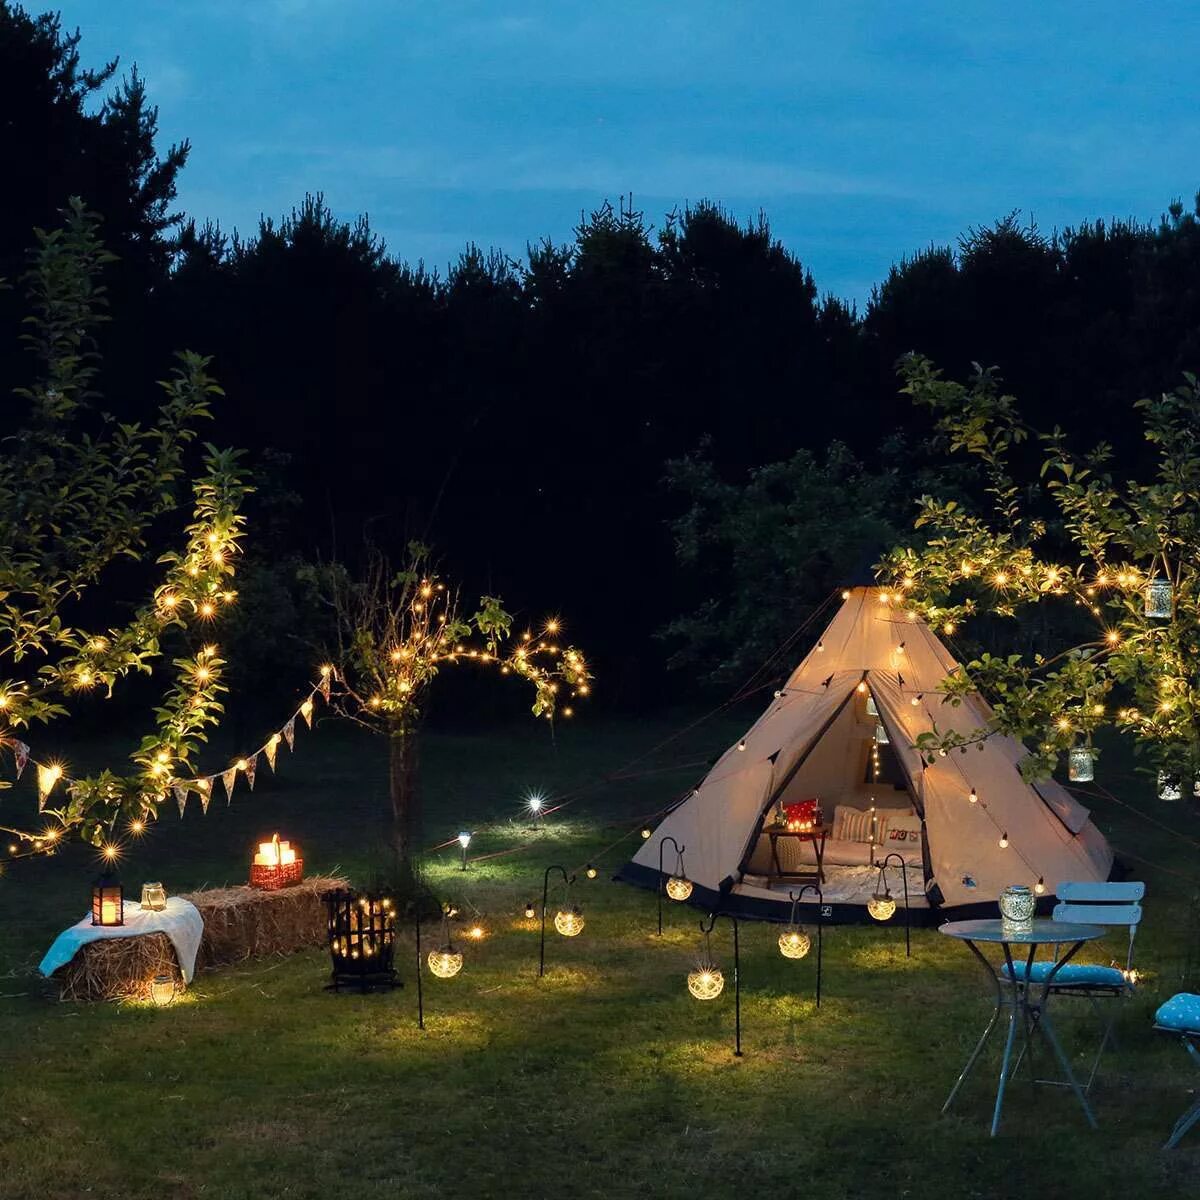 Camping light. Tent Camping Lights. Solar Camping Light xc50. Уличное освещение кемпинга. Свет для кемпинга.